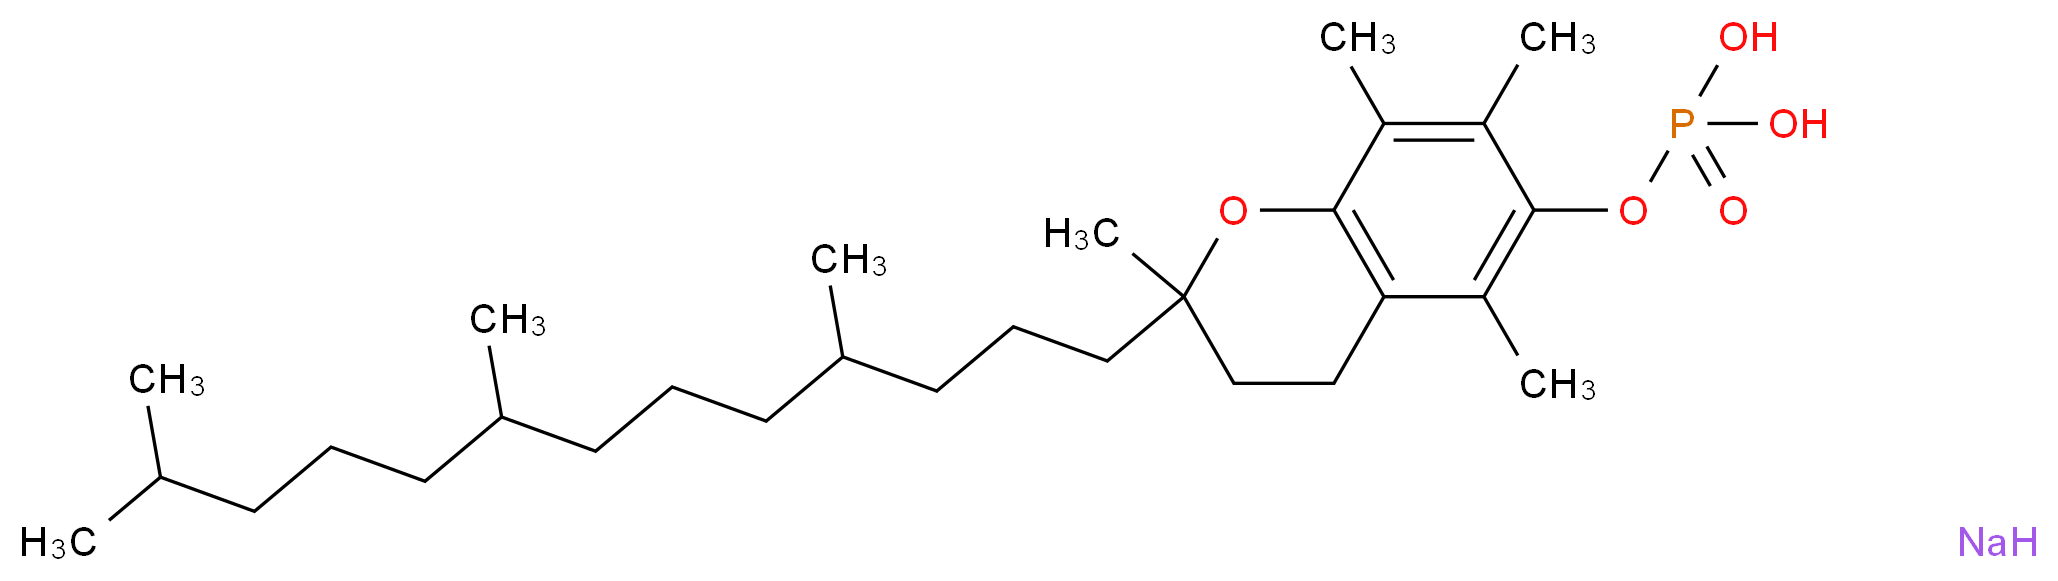 (±)-α-Tocopherol phosphate disodium salt_Molecular_structure_CAS_60934-46-5)